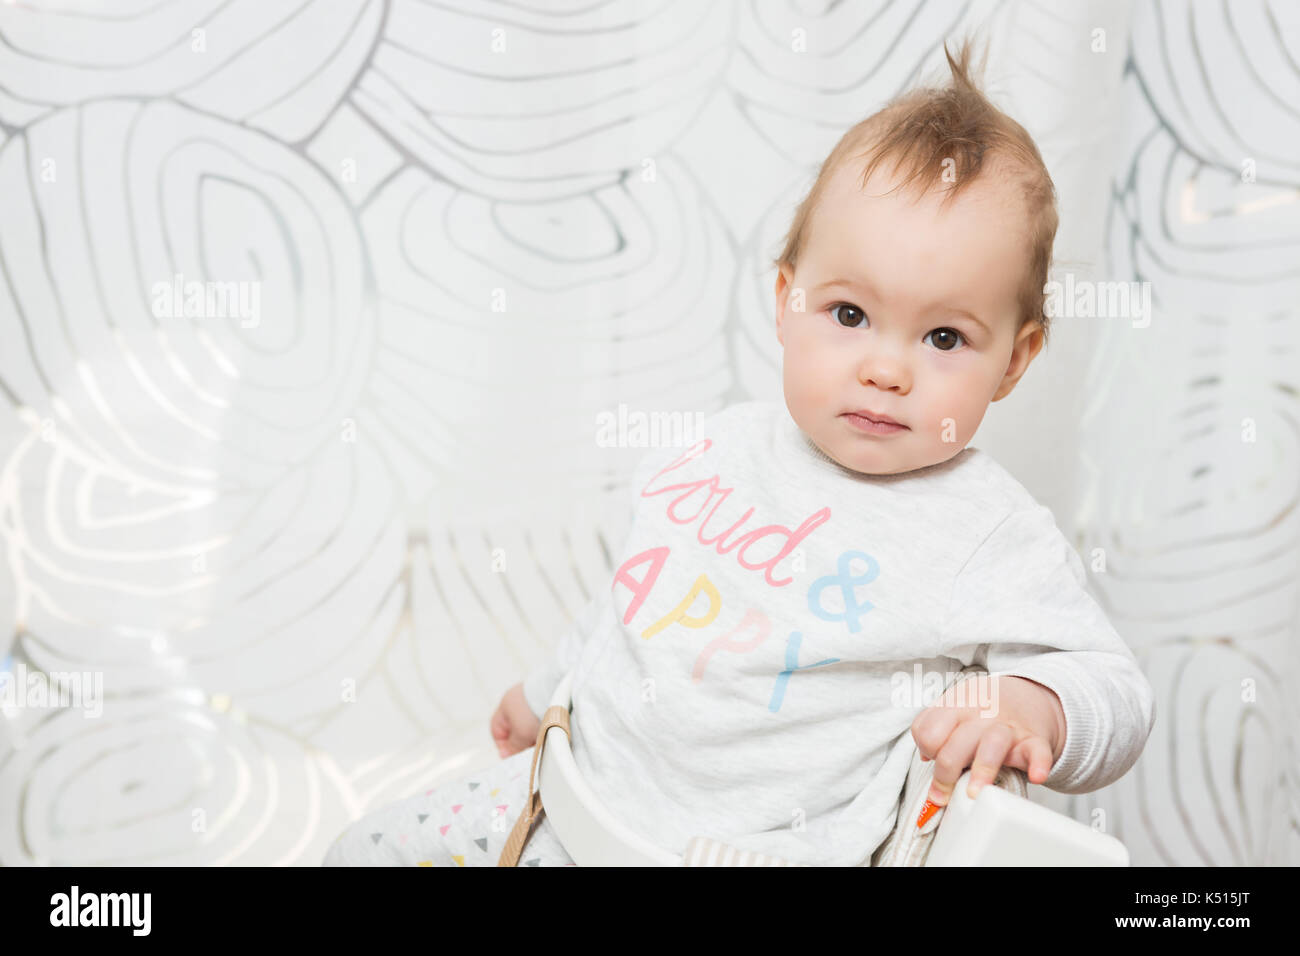 Onze mois baby girl sitting dans un tabouret pour faire des grimaces dans l'appareil photo Banque D'Images